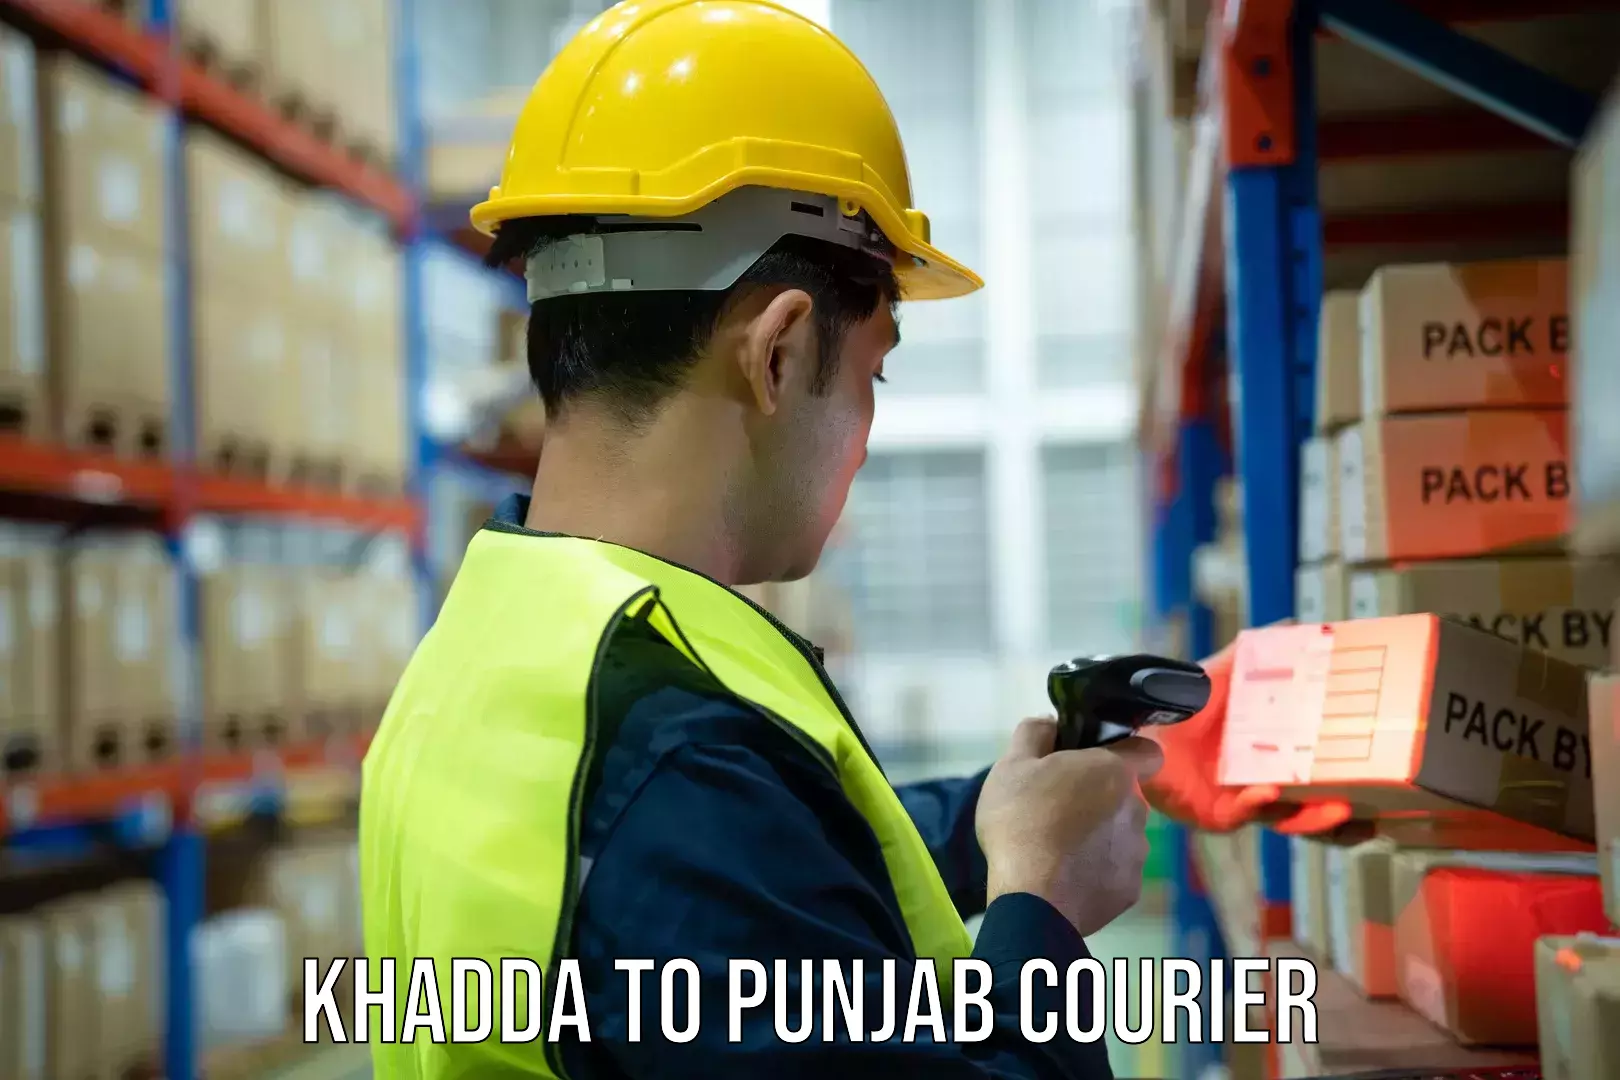 Express delivery capabilities Khadda to Moga